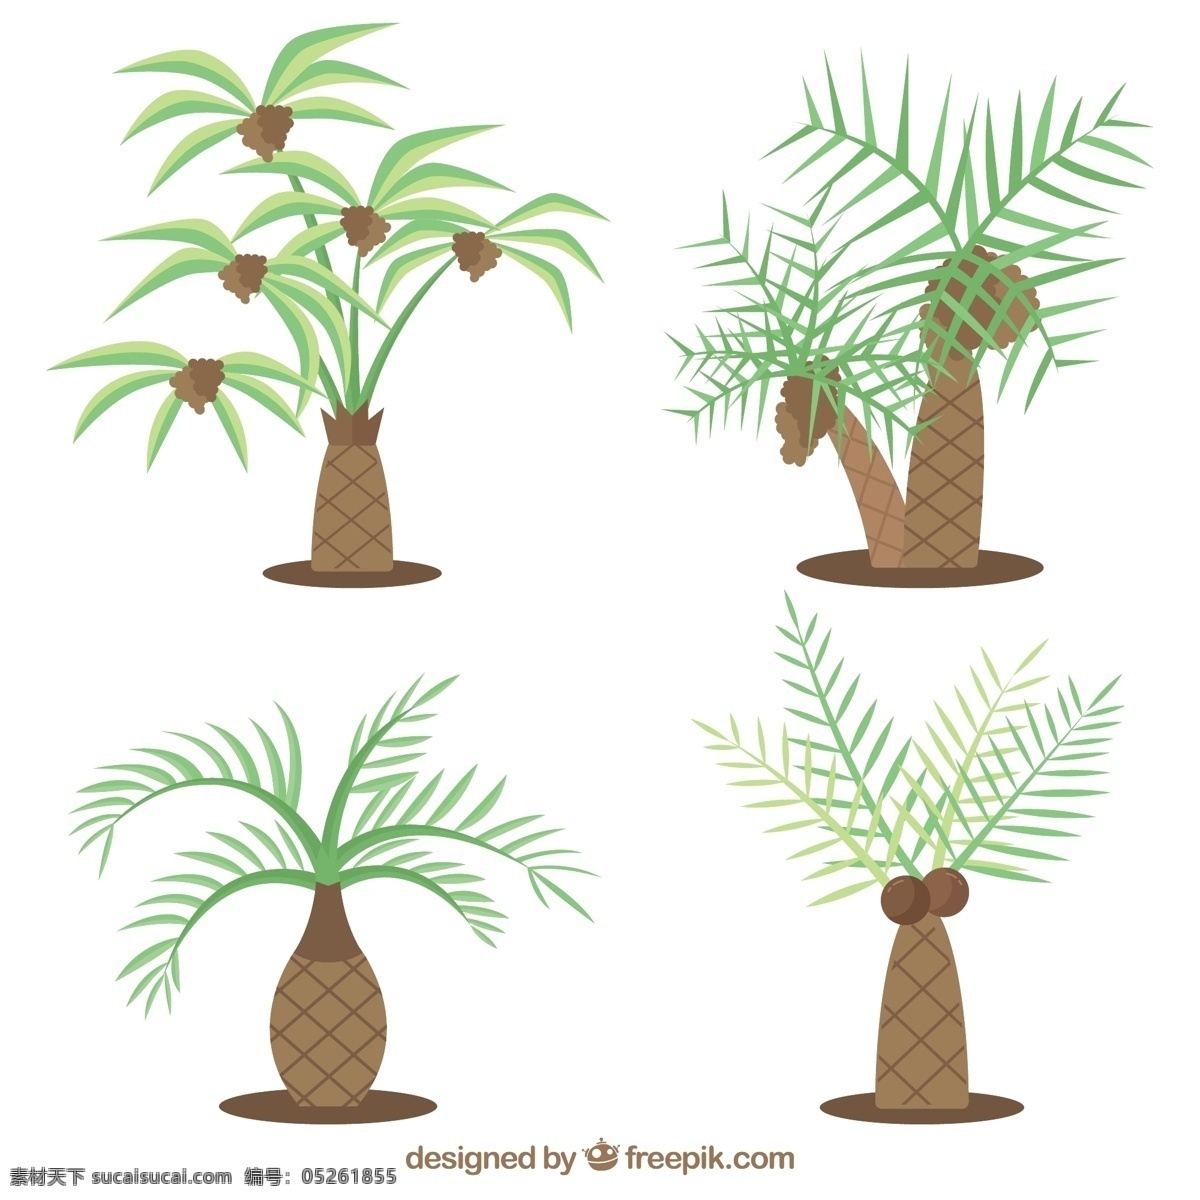 各种 类型 棕榈树 插图 热带 卡通 植物 矢量素材